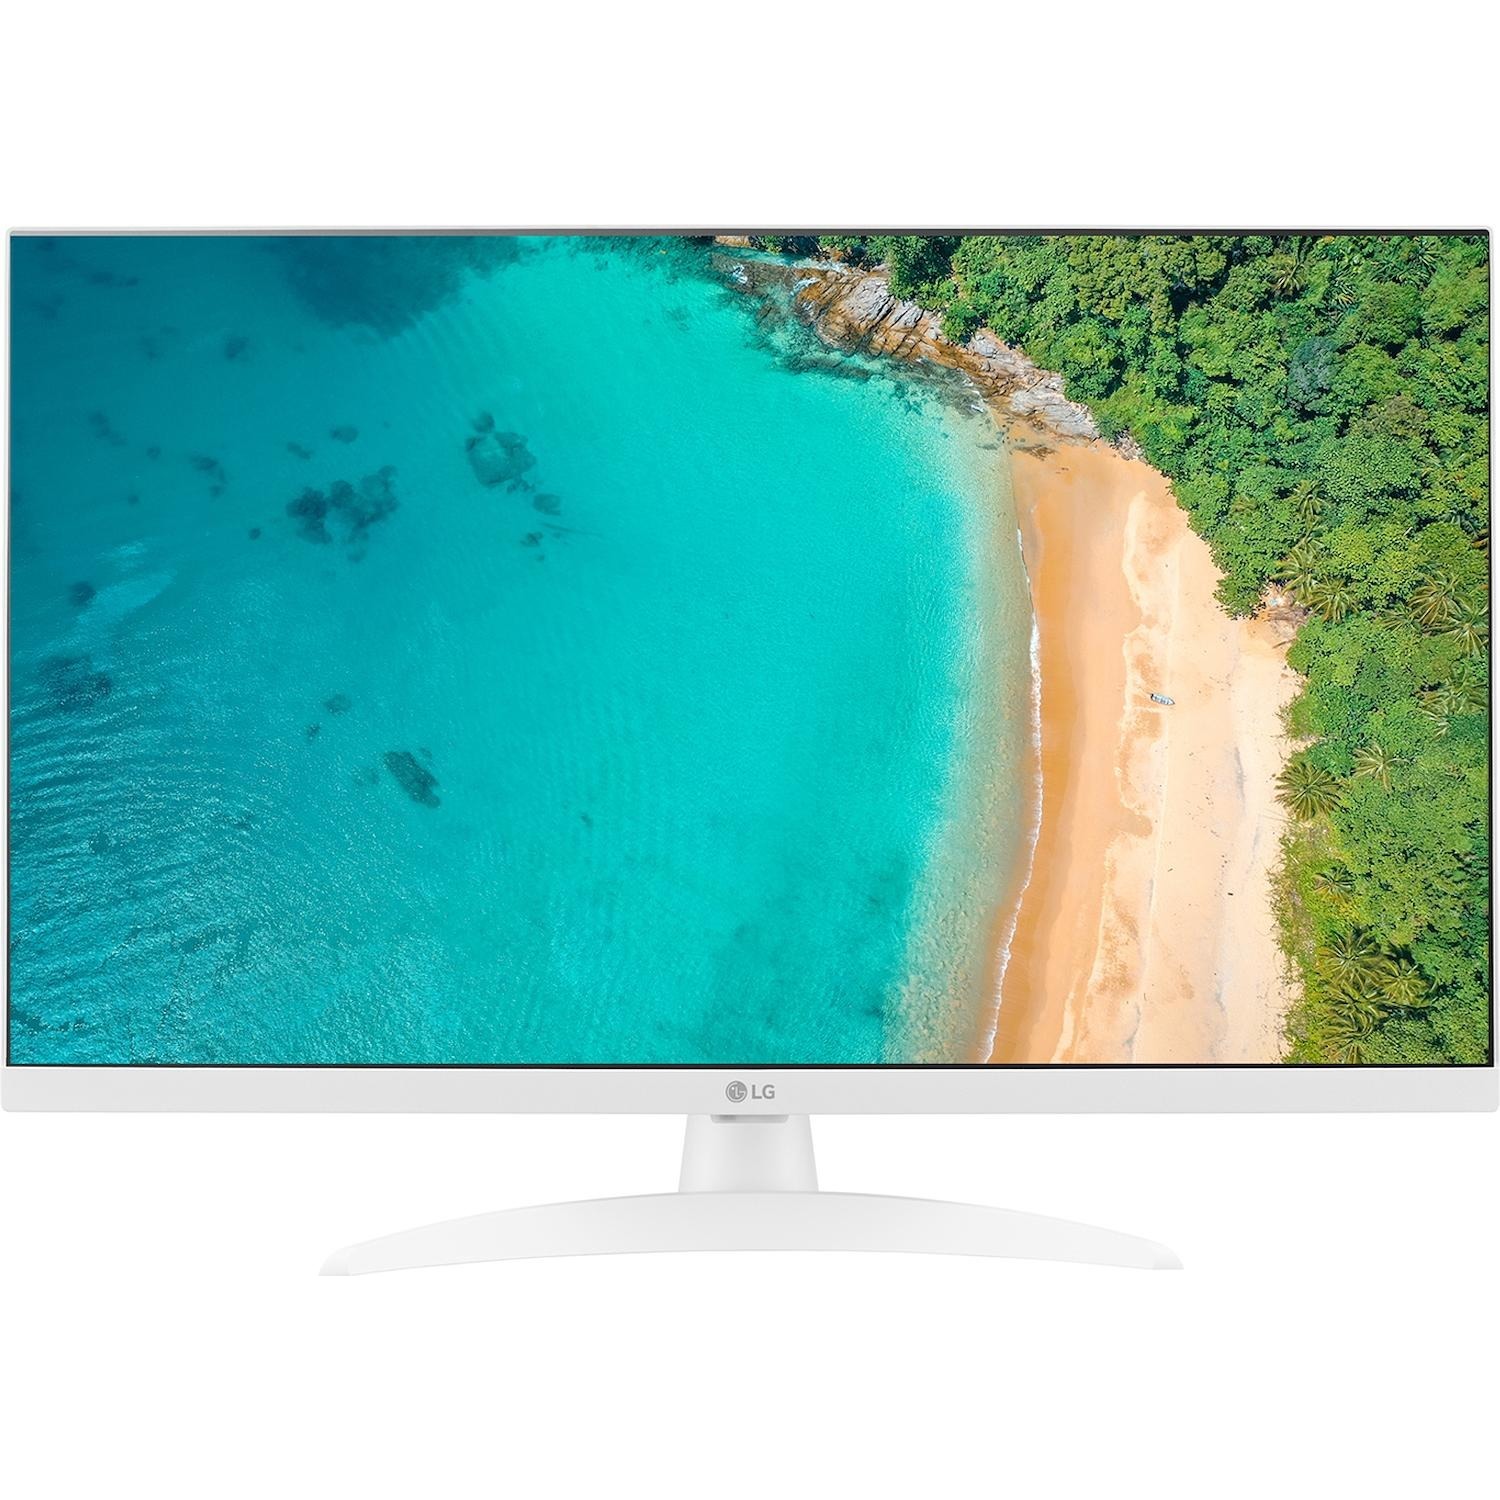 Immagine per TV LED Monitor Smart LG 27TQ615SW Calibrato FULL HD HDR da DIMOStore